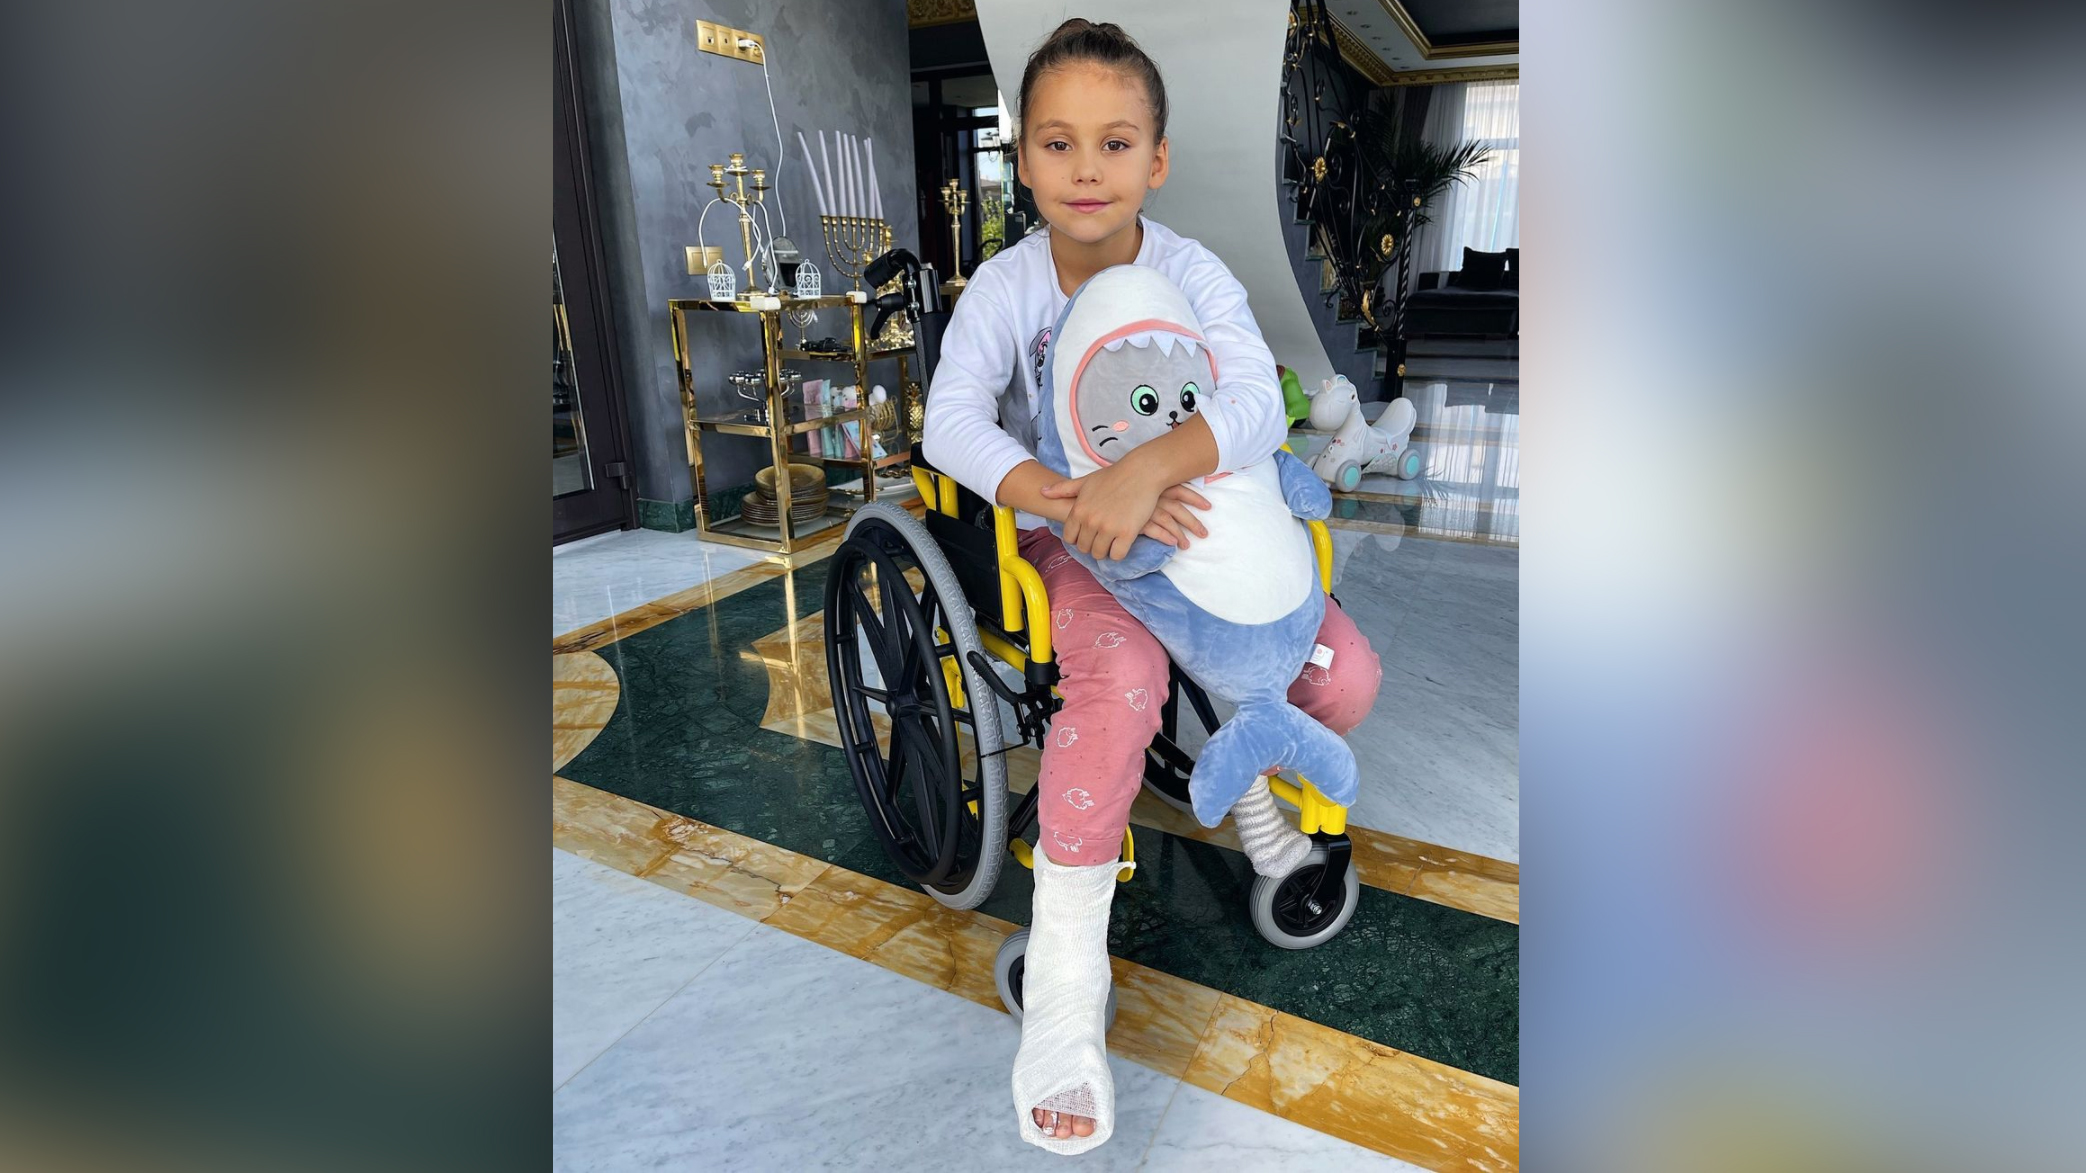 "Полночи в больнице, операция": Семилетняя дочь Джигана и Самойловой оказалась в инвалидном кресле